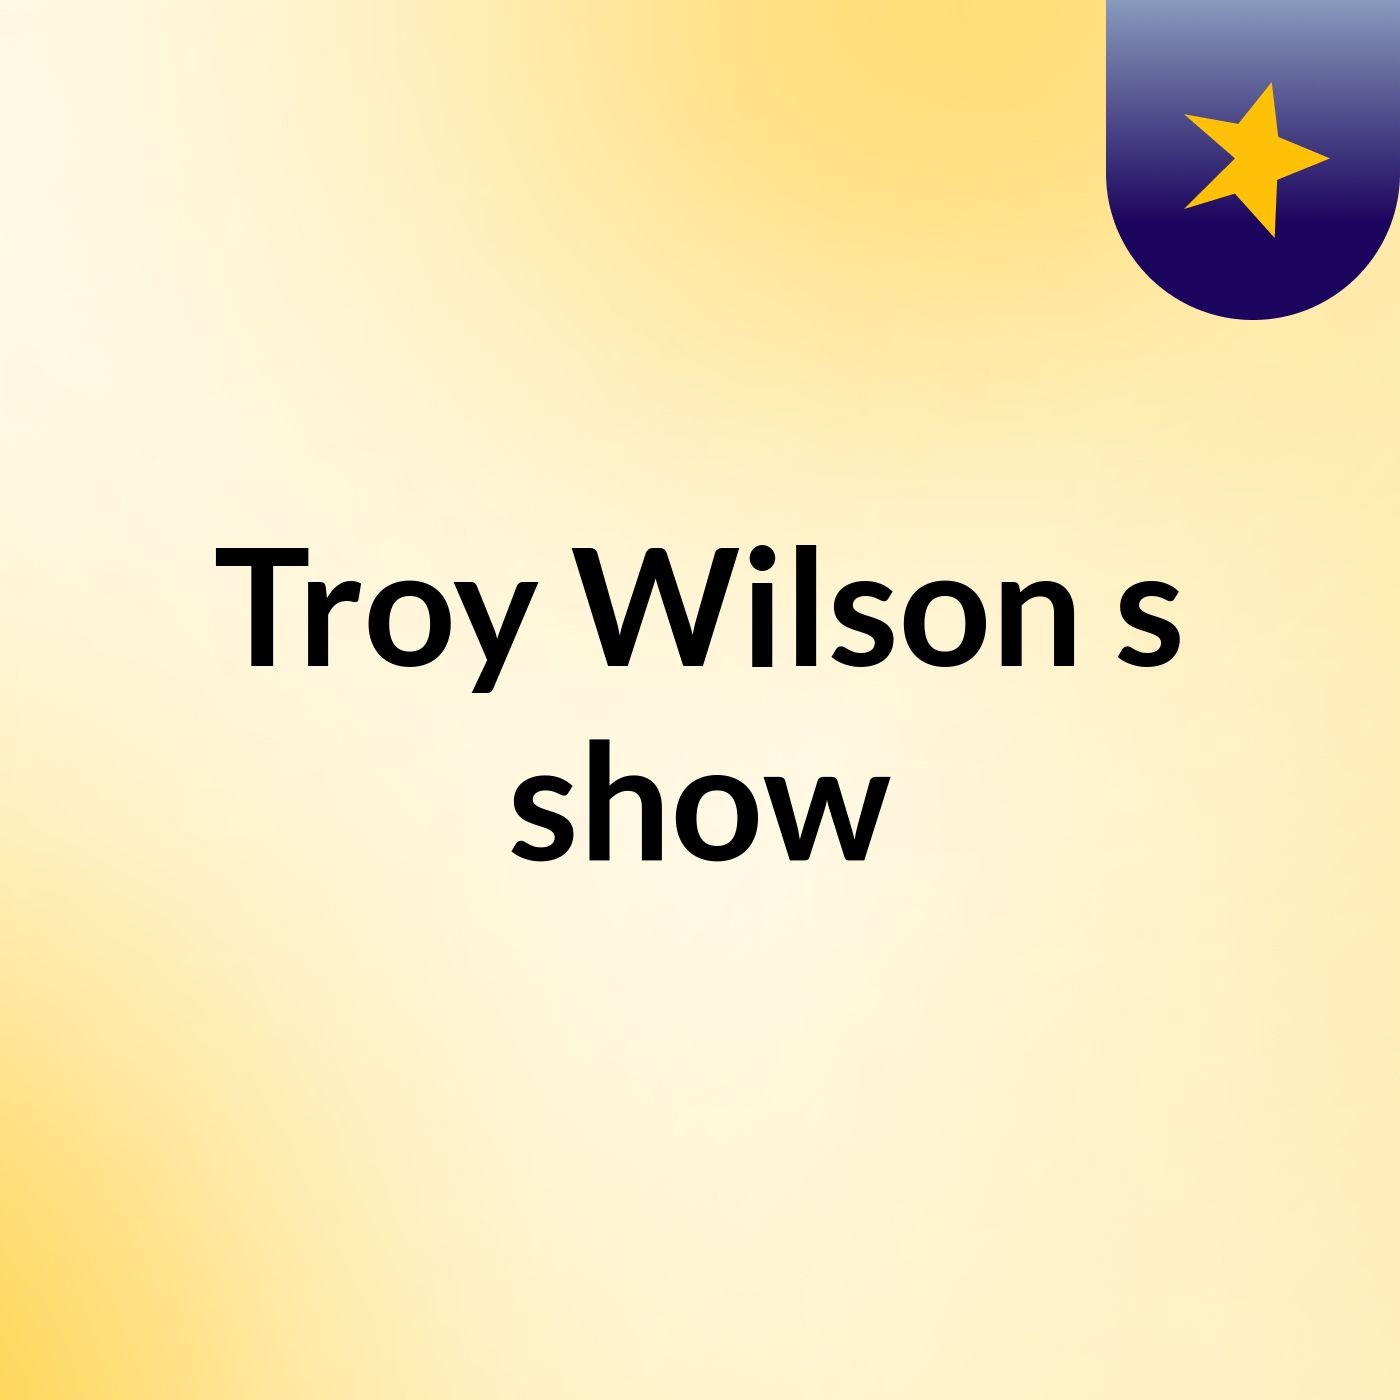 Troy Wilson's show